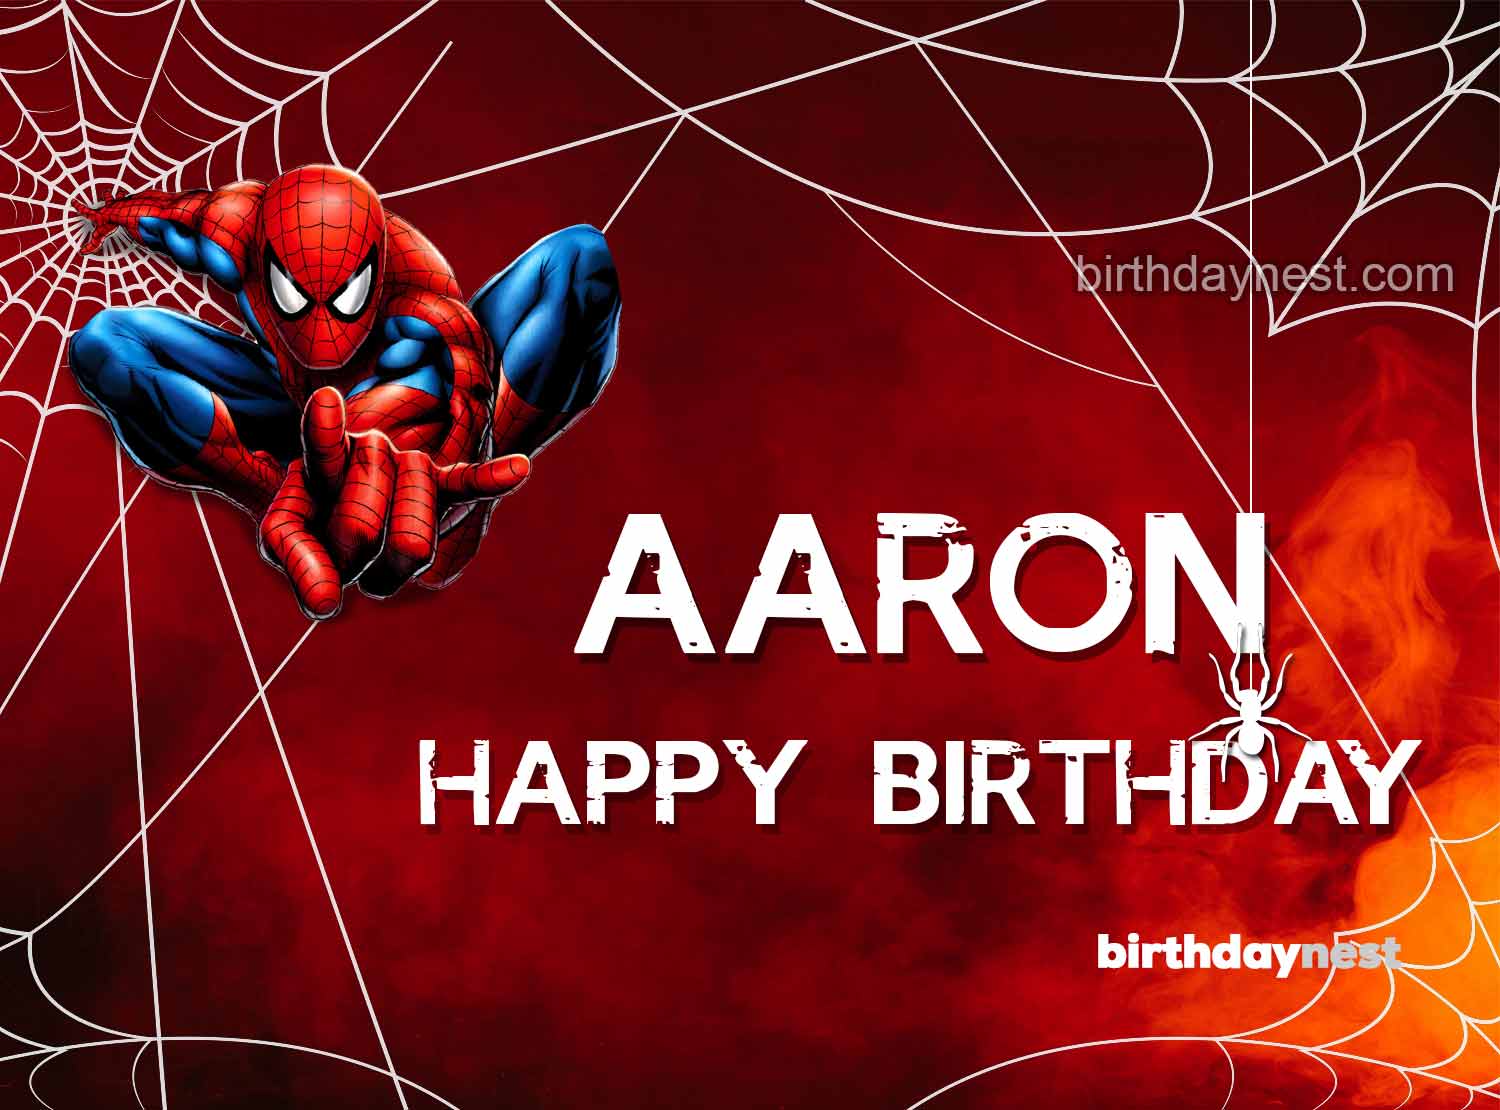 Aaron happy birthday meme